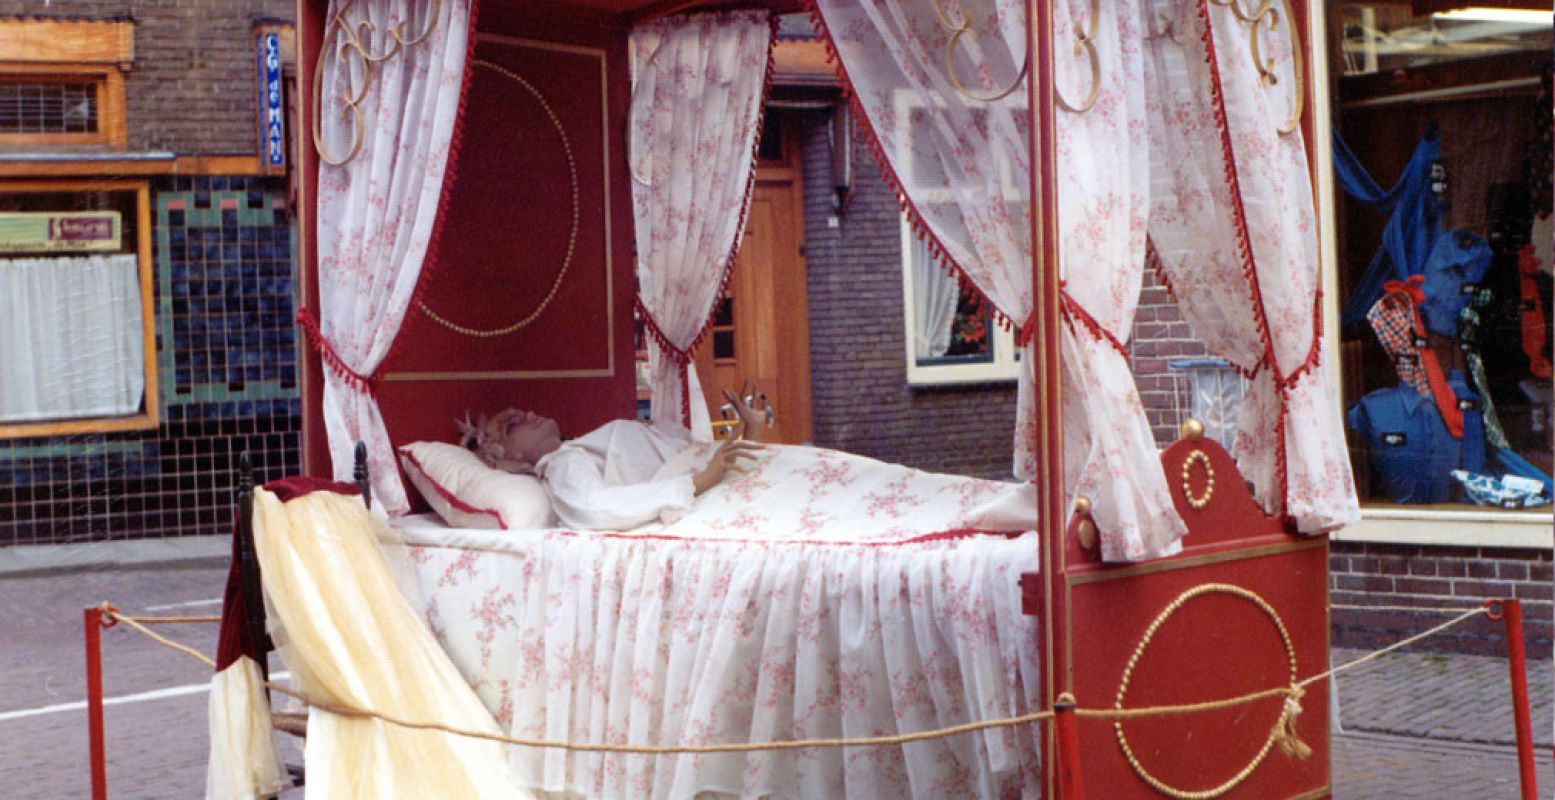 Deze schone slaapster had eerst geen vast onderkomen, maar was onderdeel van de reizende tentoonstelling. Foto: Sprookjeswonderland